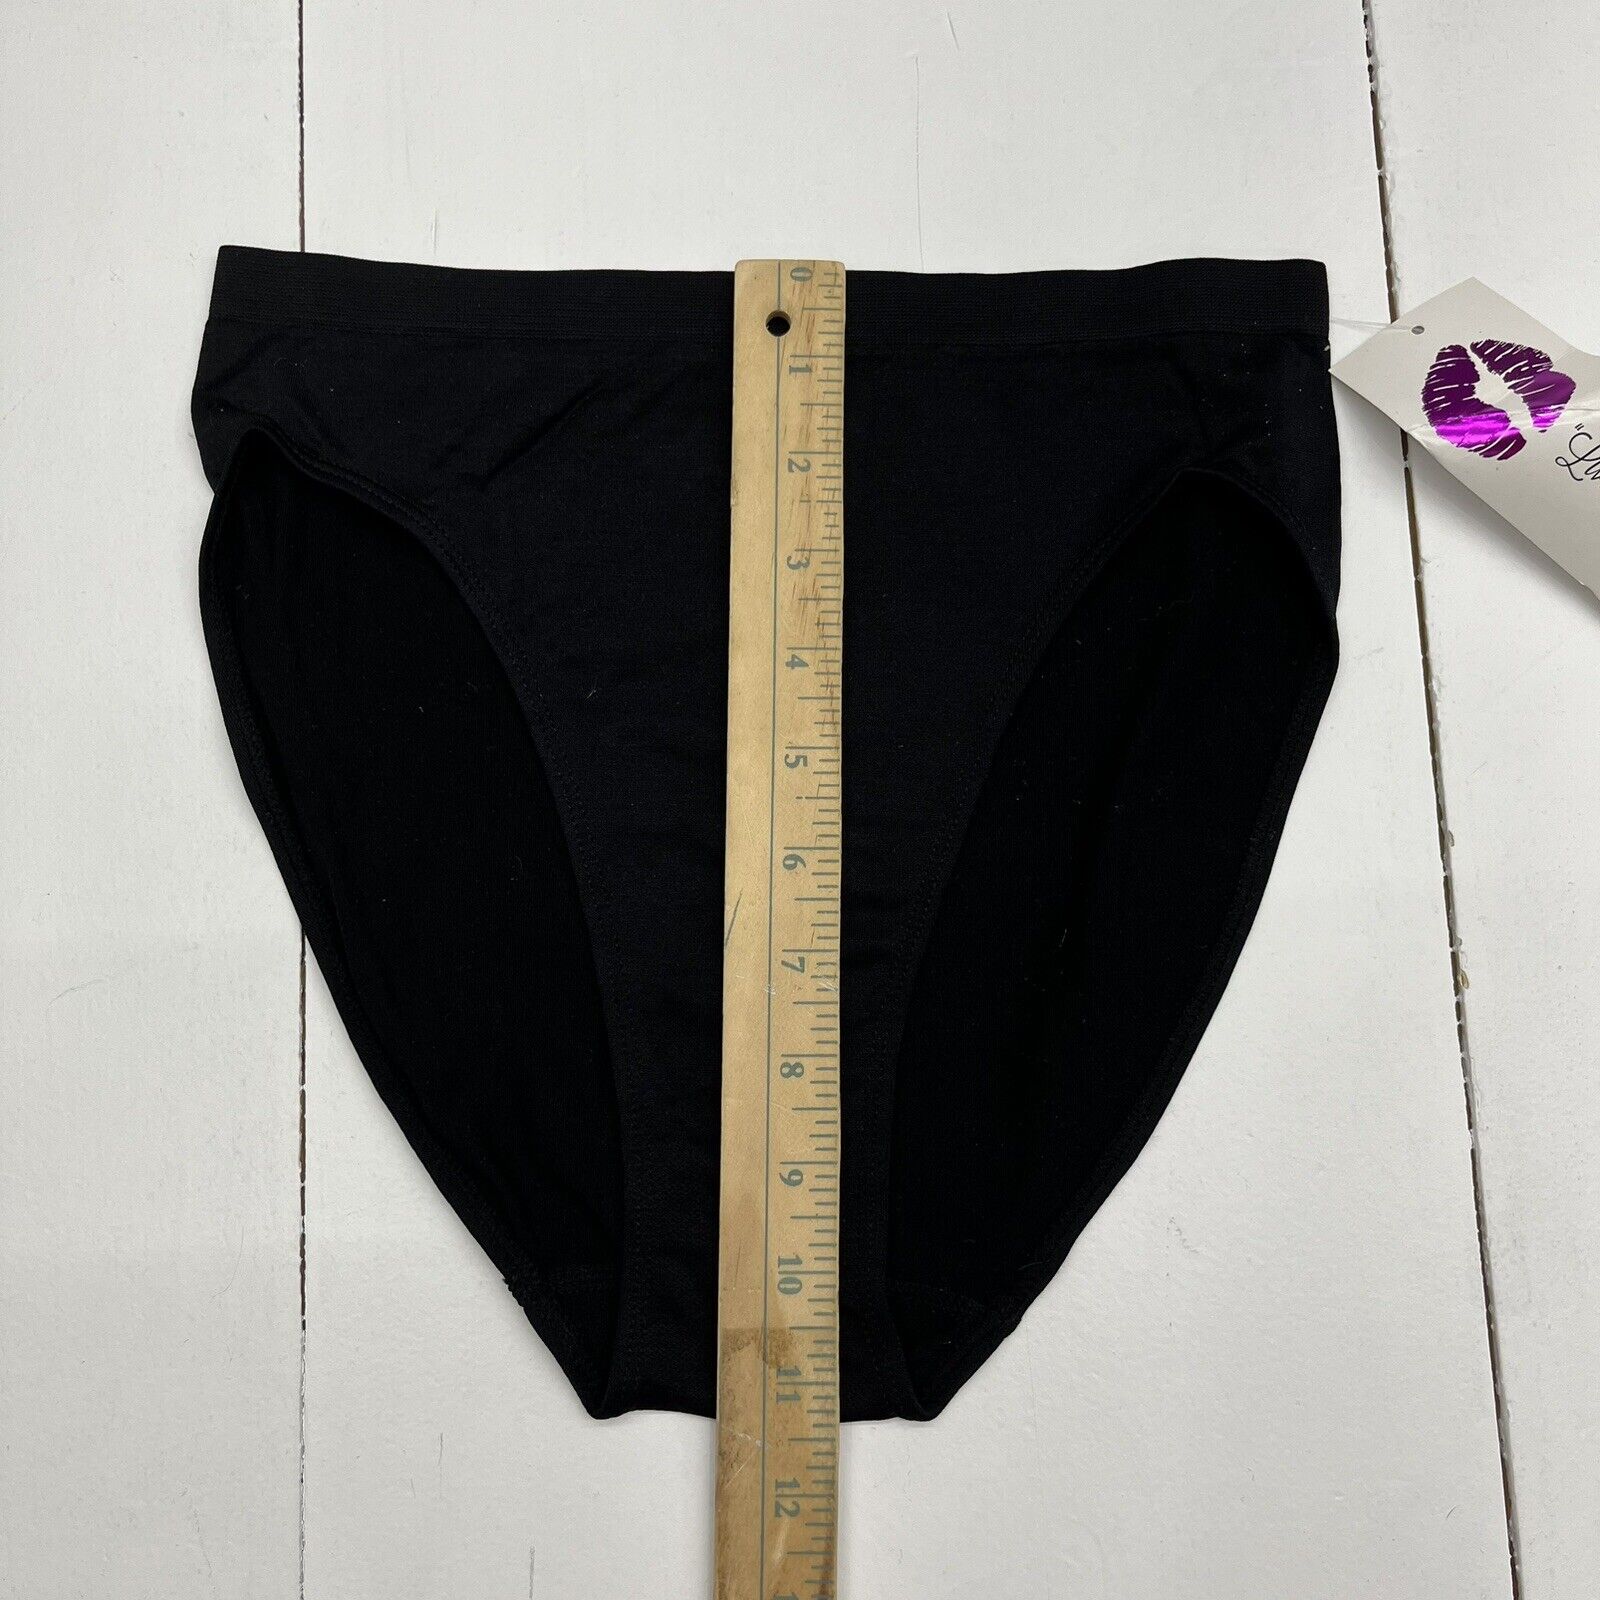 Rhonda Shear Panties 3 Pack Original Ahh Panty Black / Nude